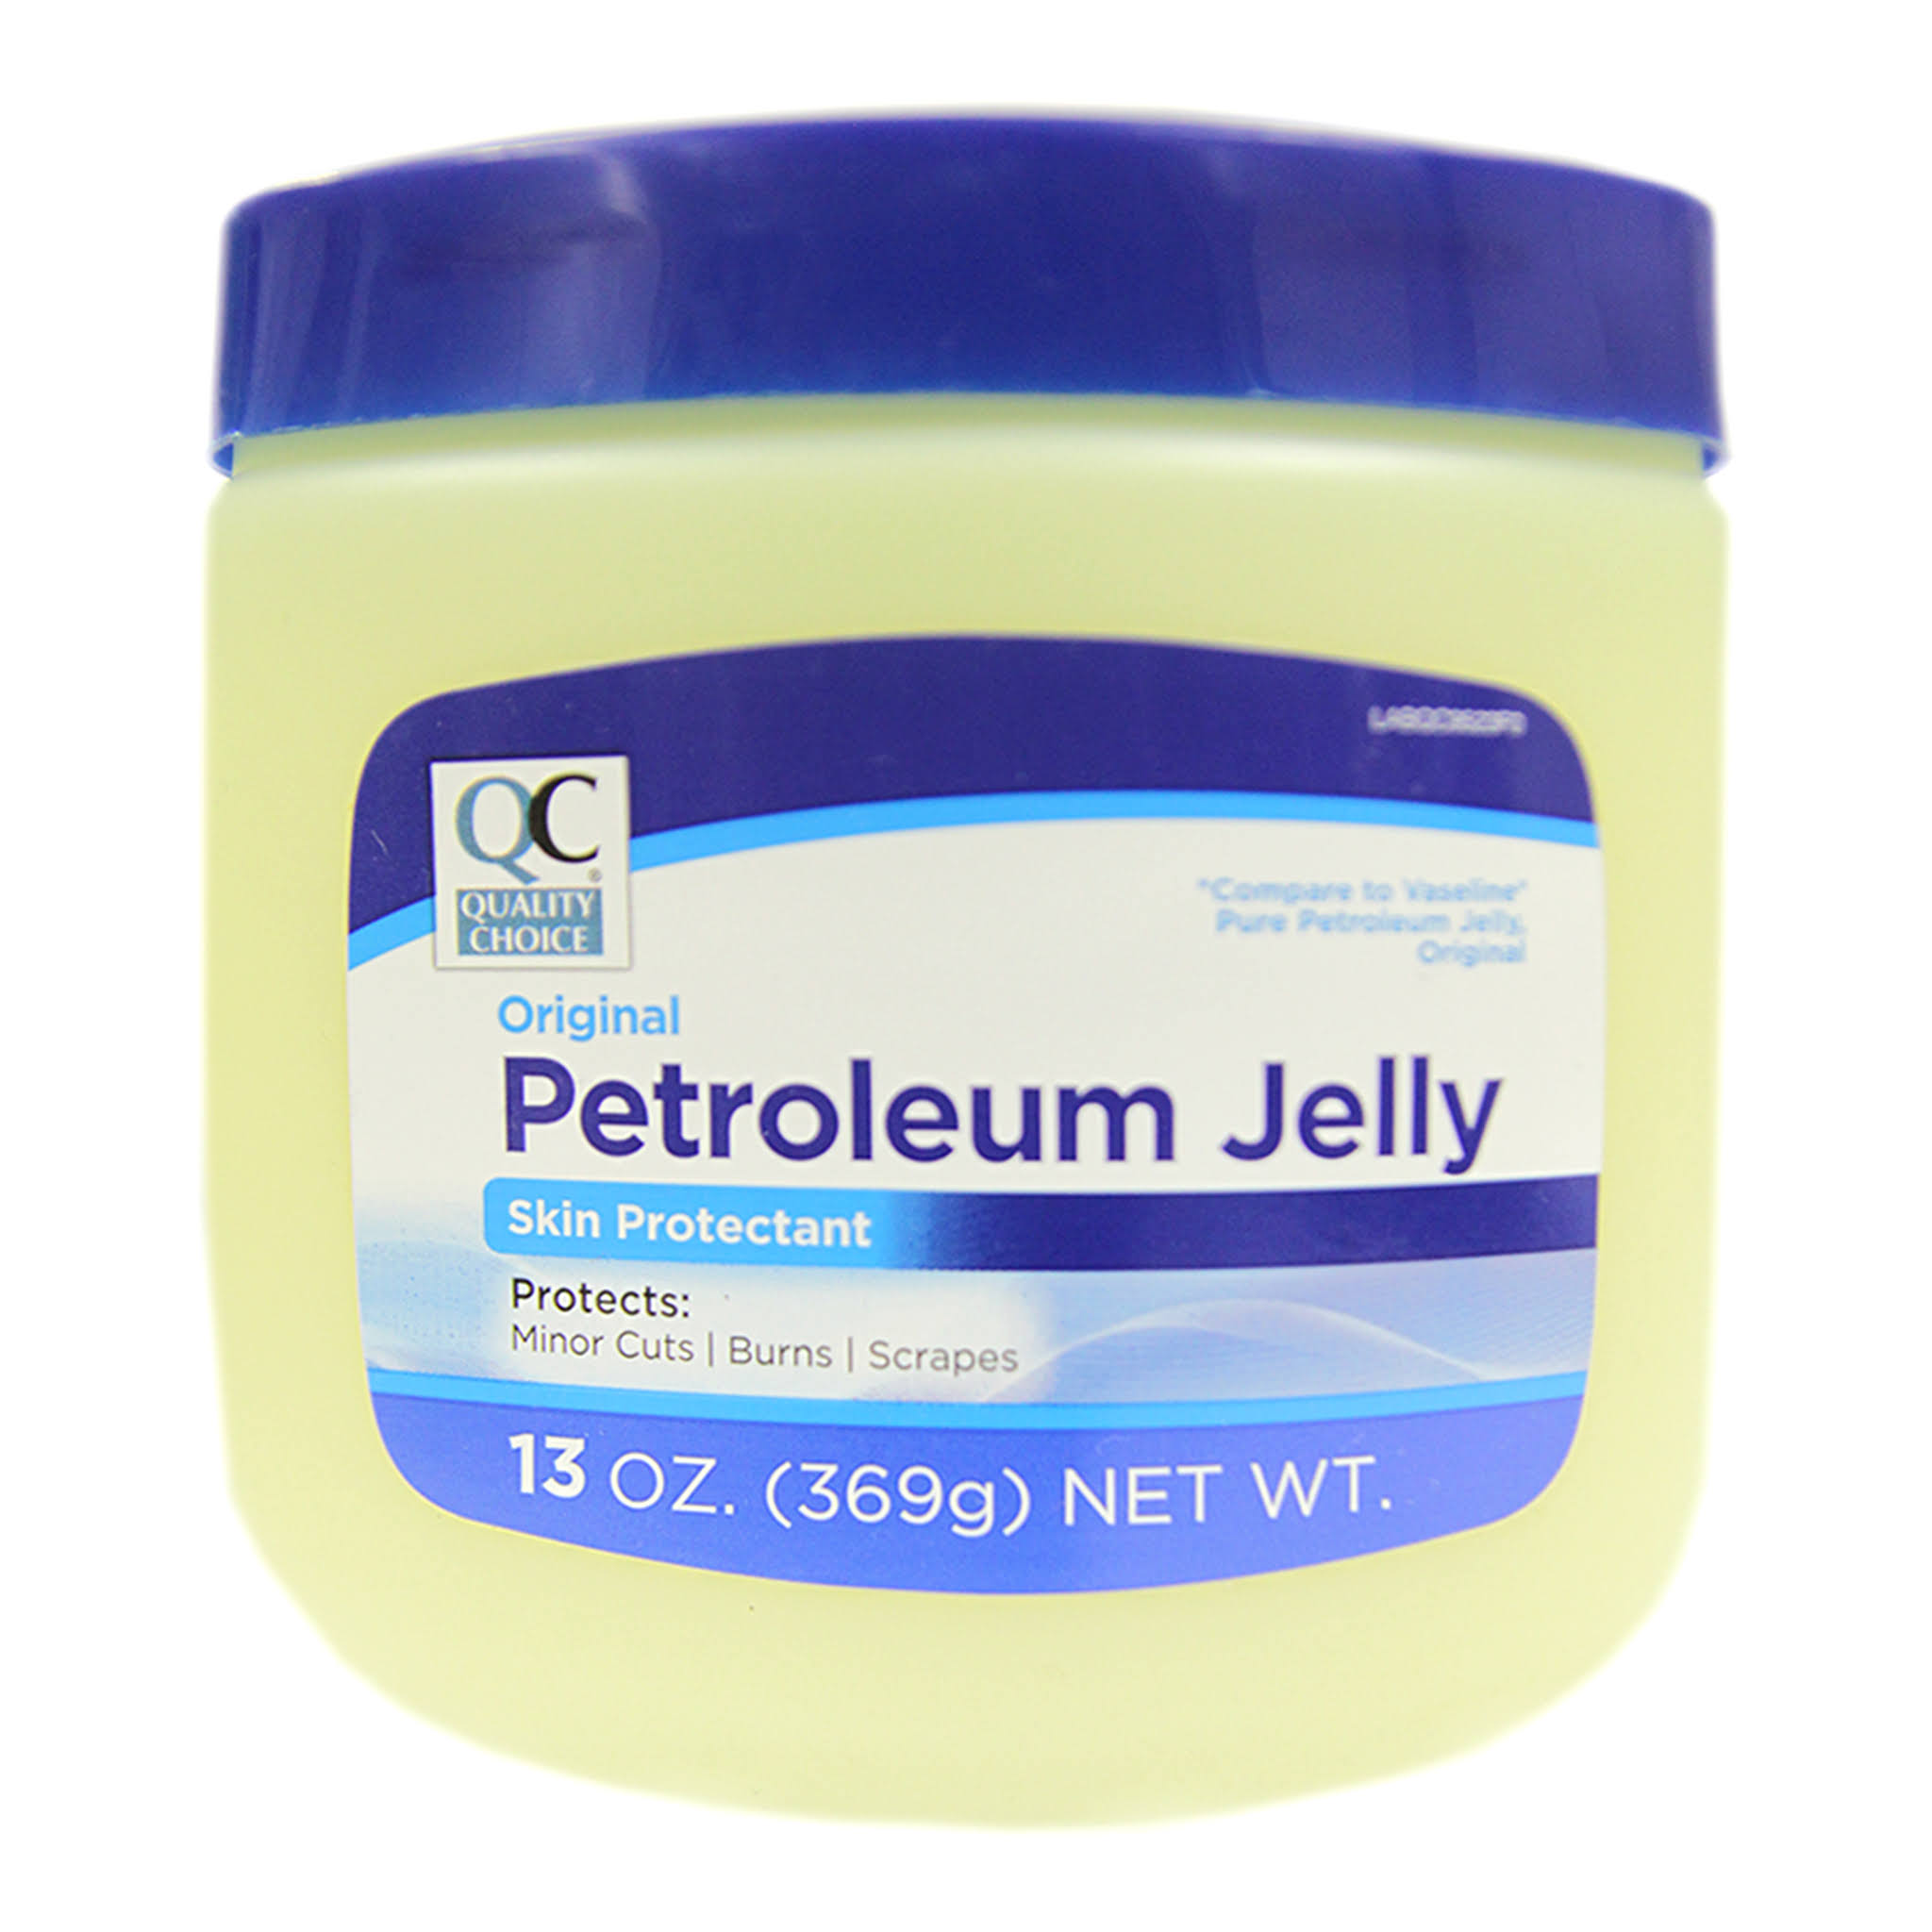 5 Pack Quality Choice Original Petroleum Jelly 13oz Each